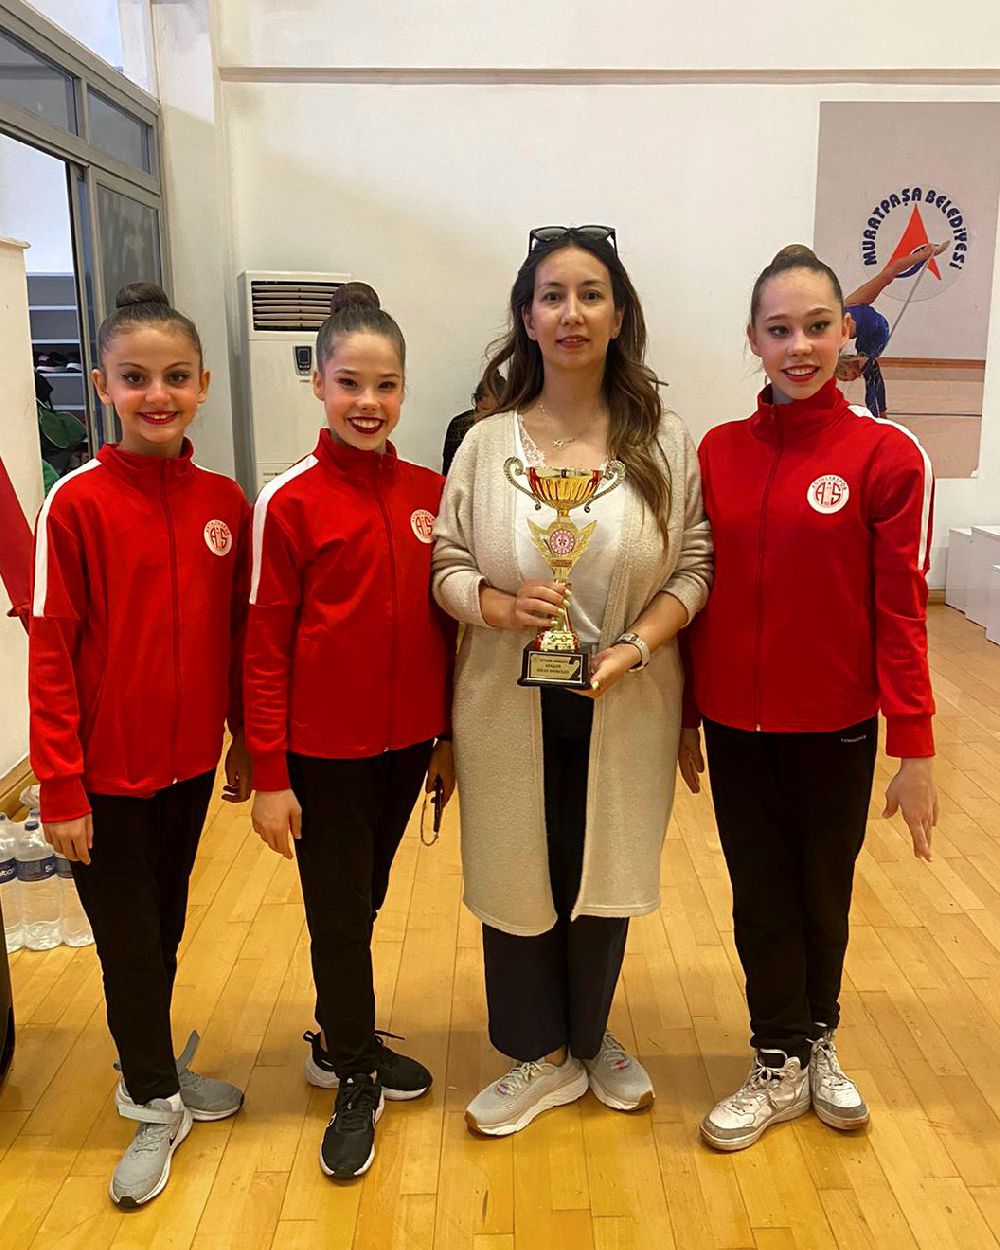 Antalyasporlu Cimnastikçiler gururlandırıyor